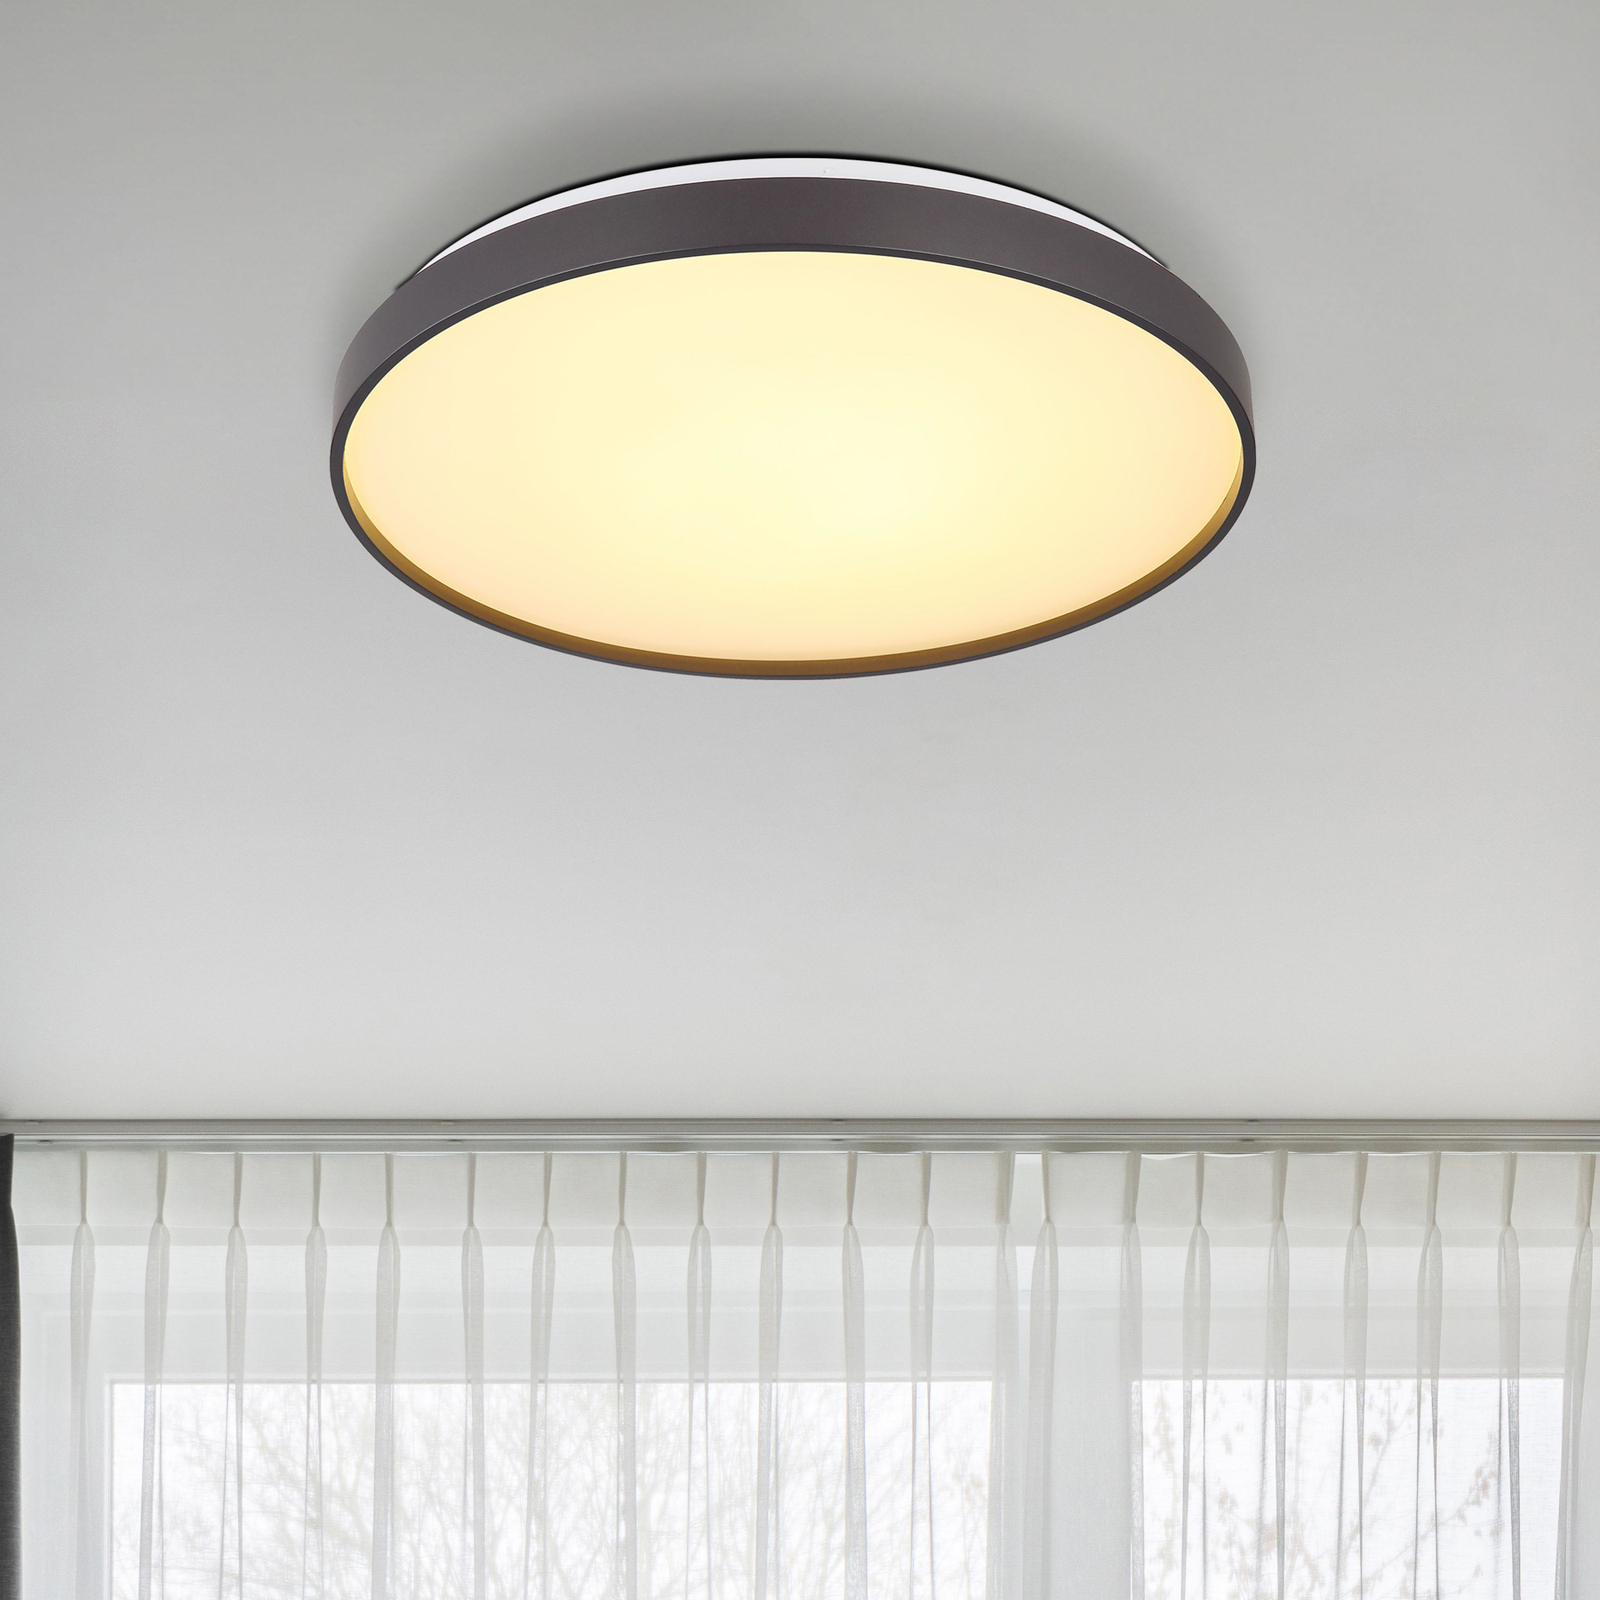 Eclypse LED stropné svietidlo, antracitová farba, Ø 48 cm, akryl/kov